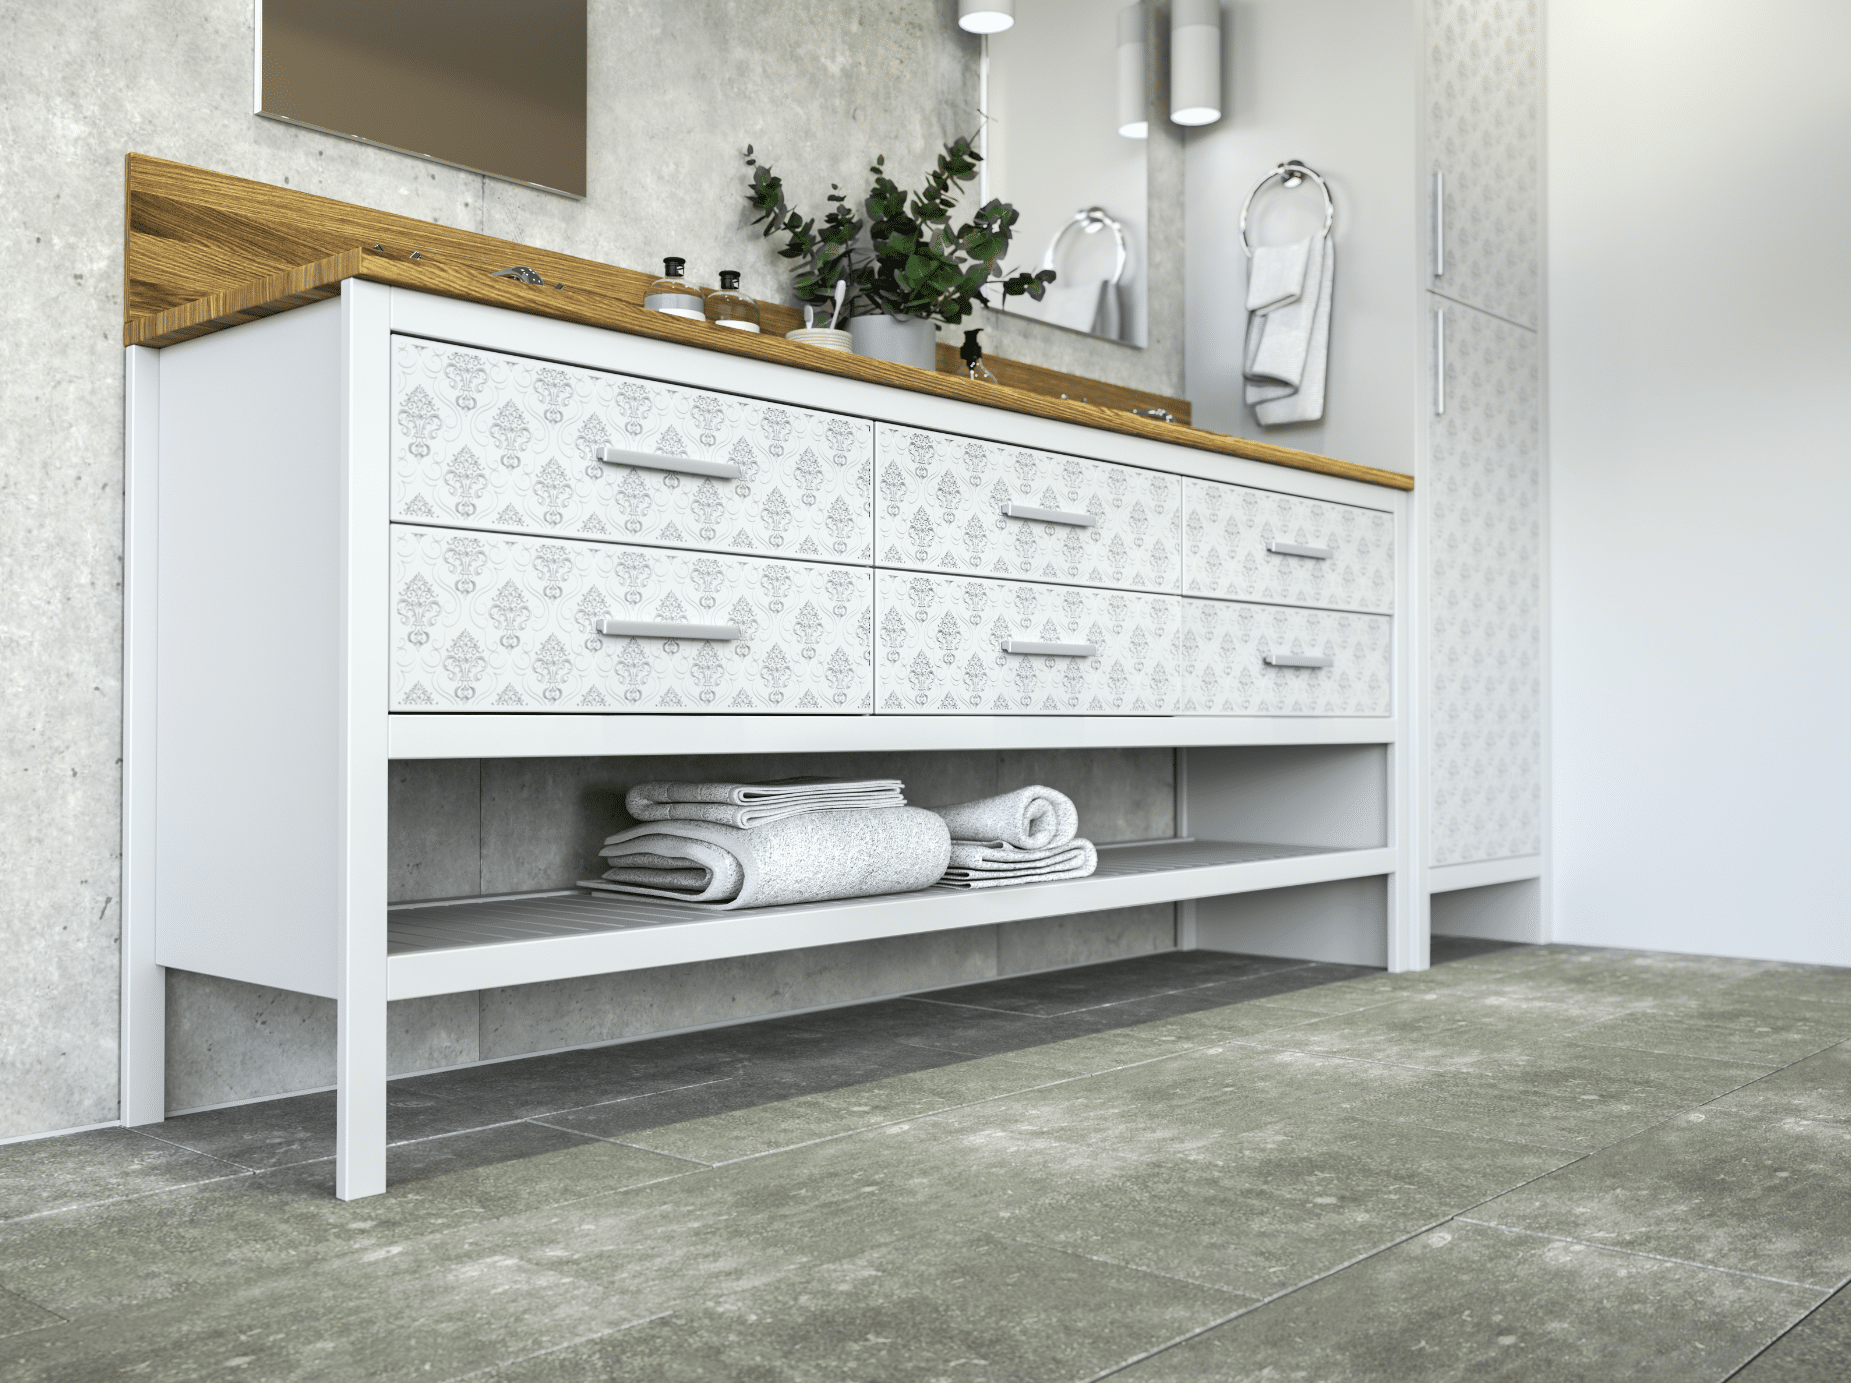 Keplinger zeigt einen weissen Waschtisch mit schöner Holzgravur und Laden mit silbernen Griffen in einem hellen Badezimmer mit Fliesenboden.